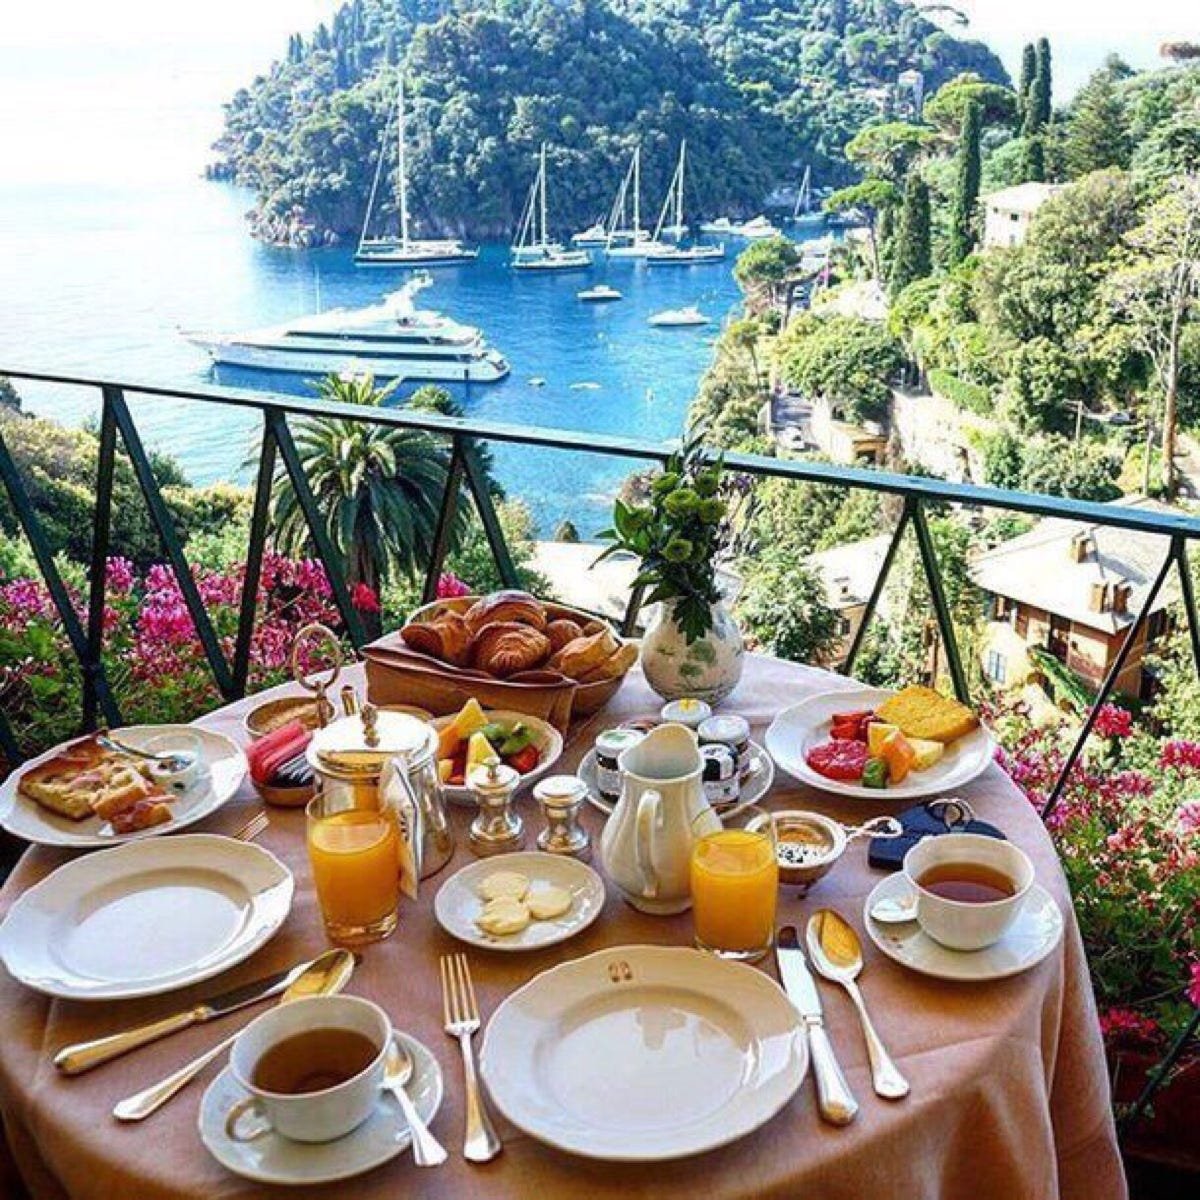 Обеденный отдых. Красивый завтрак. Завтрак у моря. Завтрак с видом на море. Роскошный завтрак.